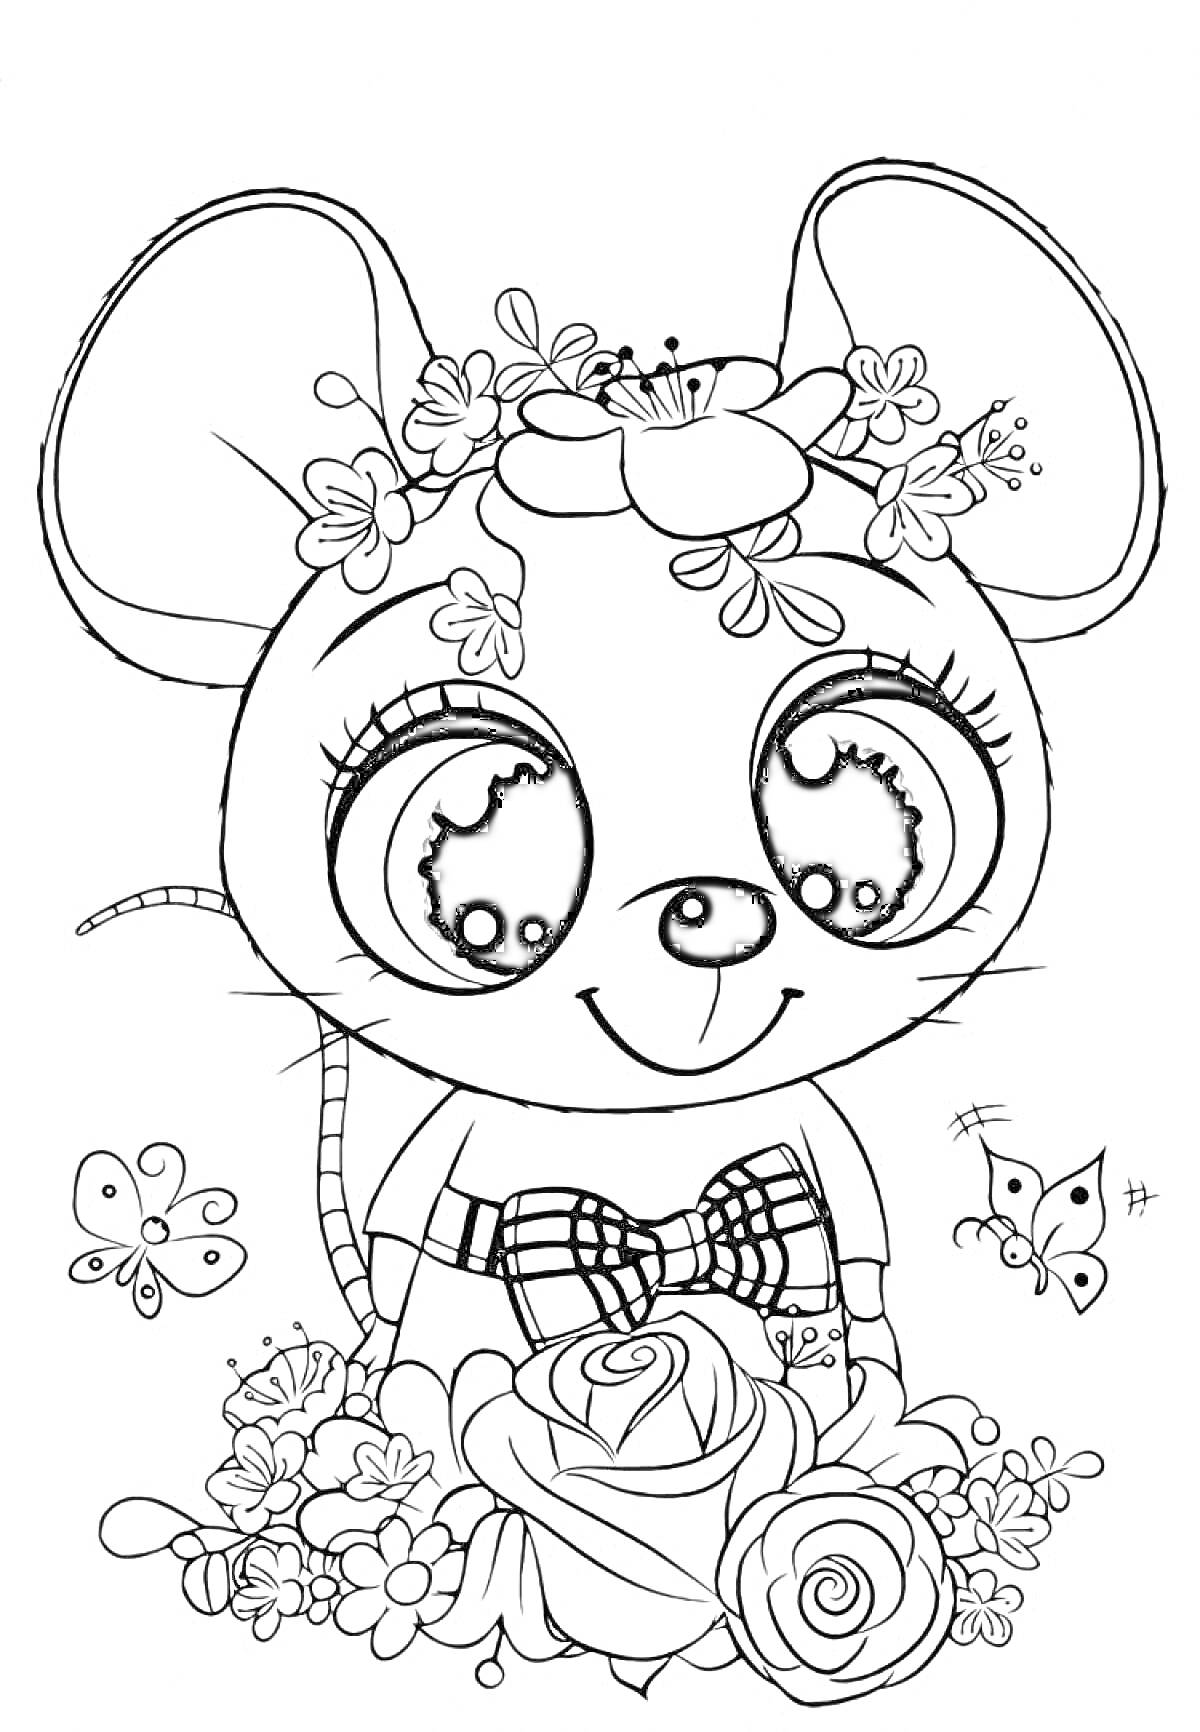 Раскраска Милая мышка с цветами на голове и в руках, с бабочками